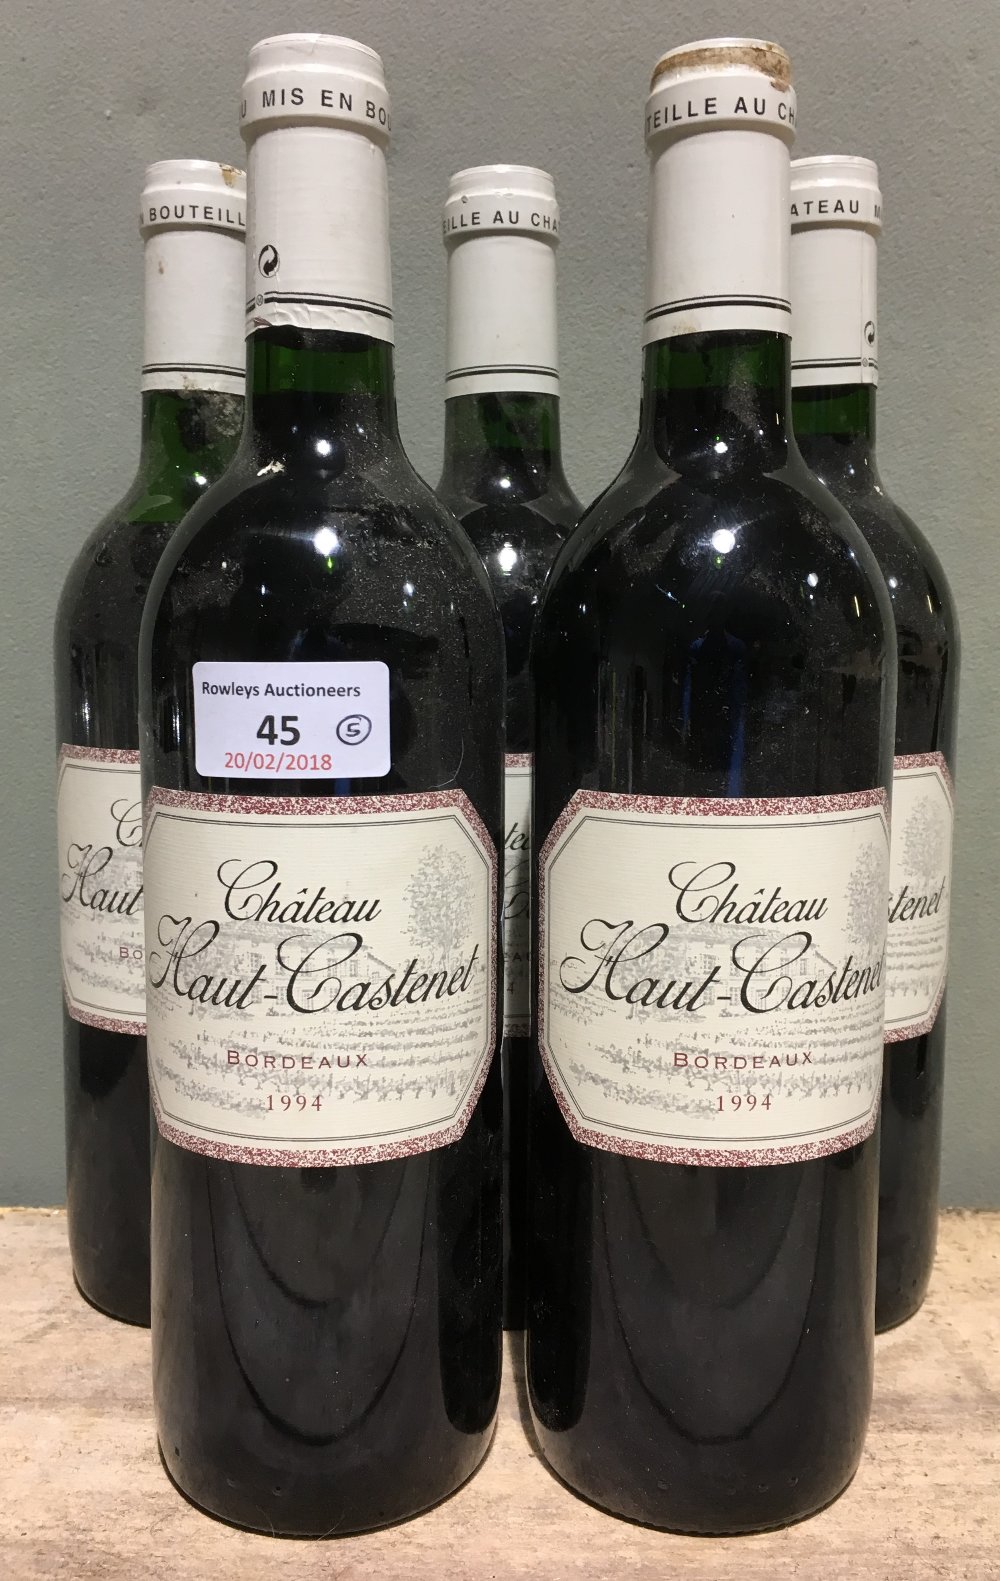 Chateau Haut-Castenet Bordeaux, 1994 Five bottles.